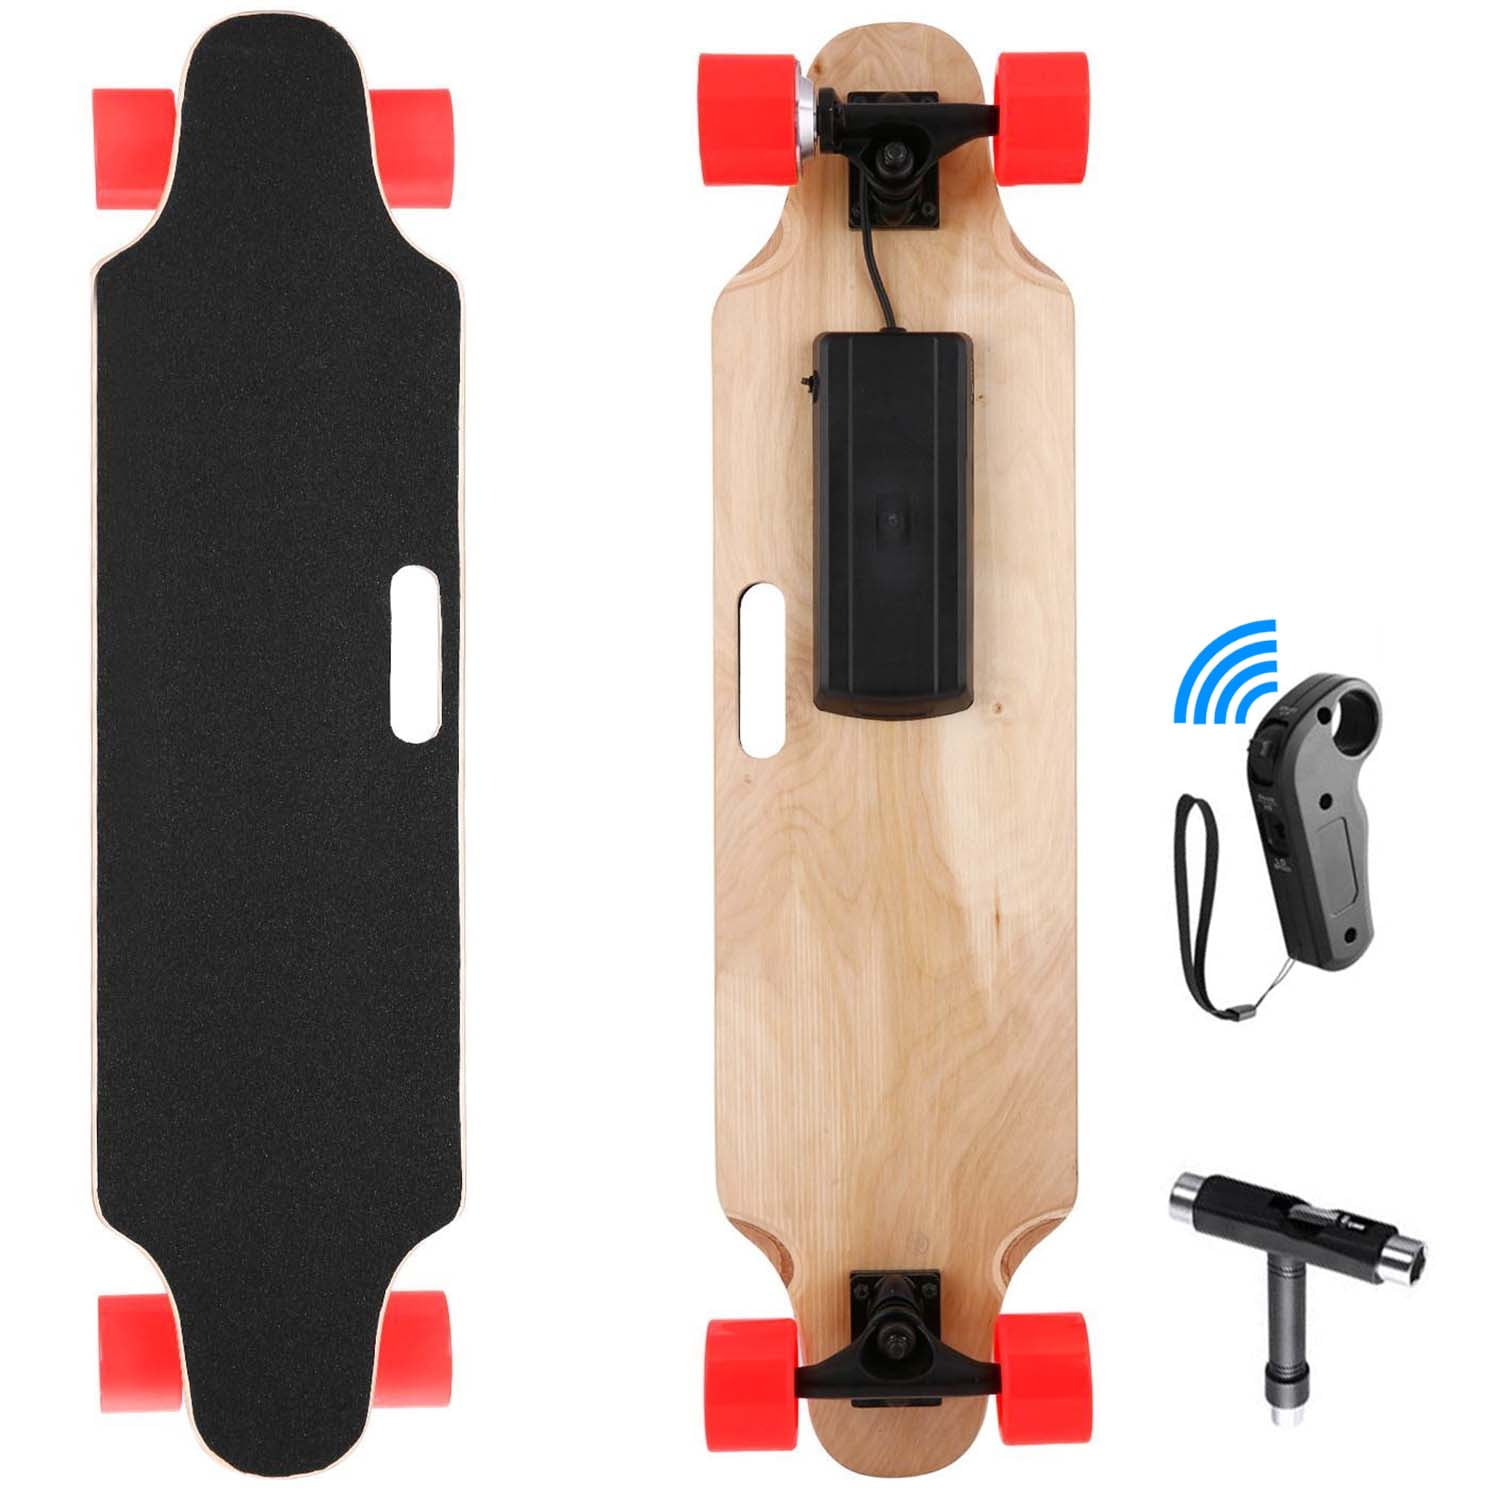 350W Electric Skateboard|20 KM/H Top Speed Longboard|Complete Cruiser Skateboard 